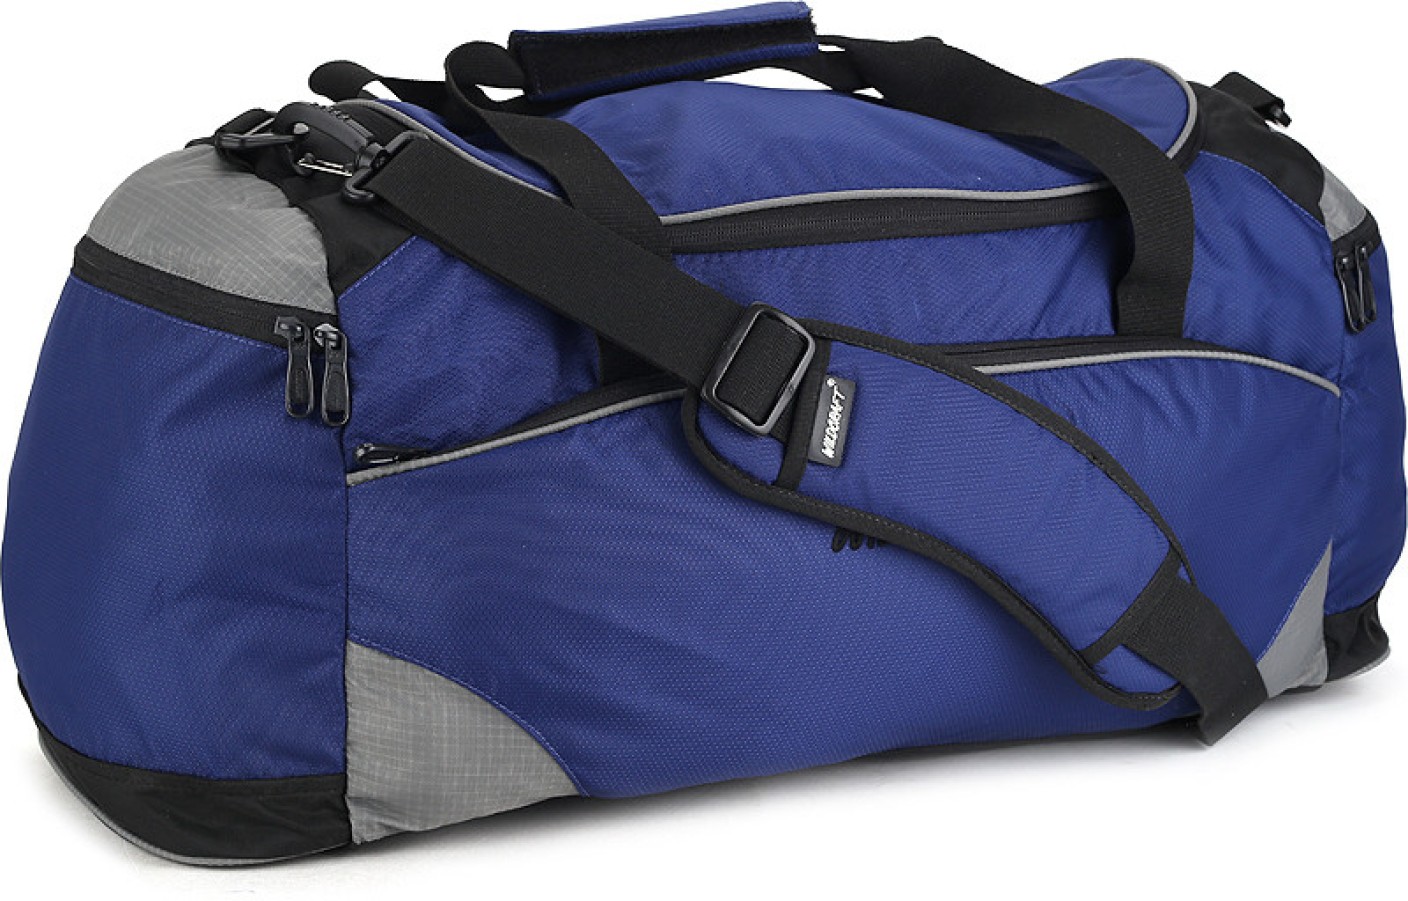 wildcraft aqua small travel duffel bag